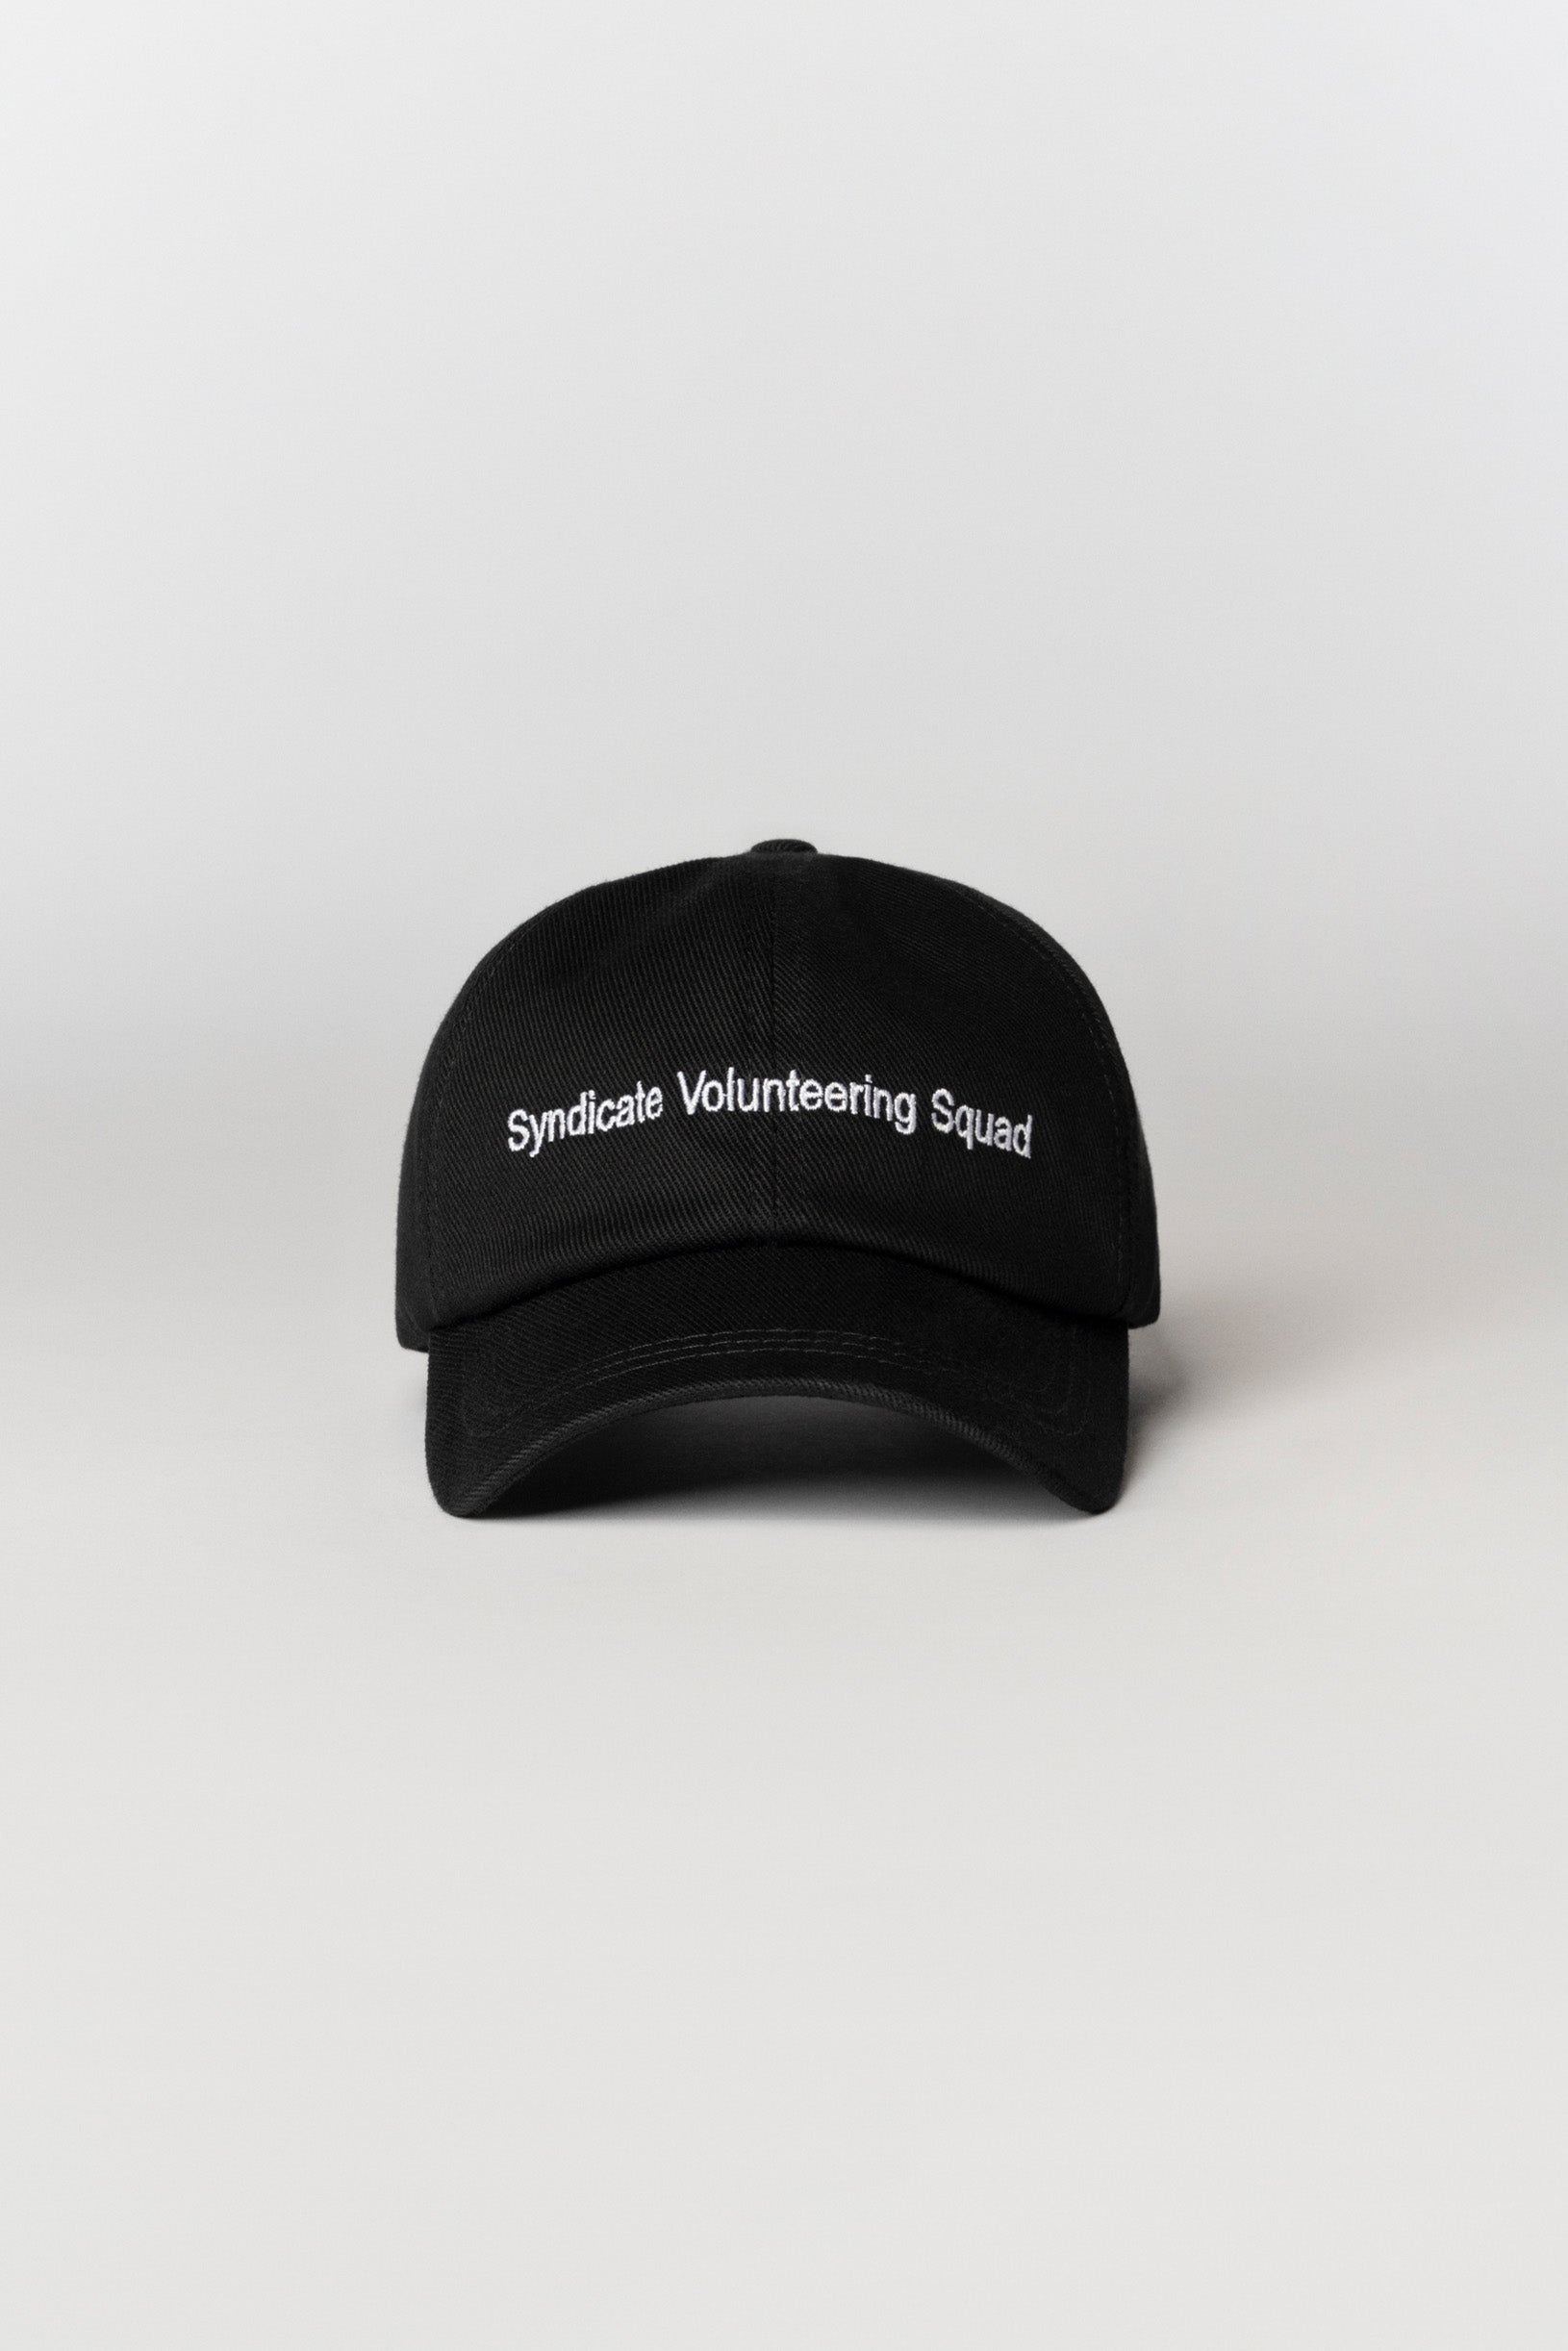 Syndicate Volunteering Squad cap